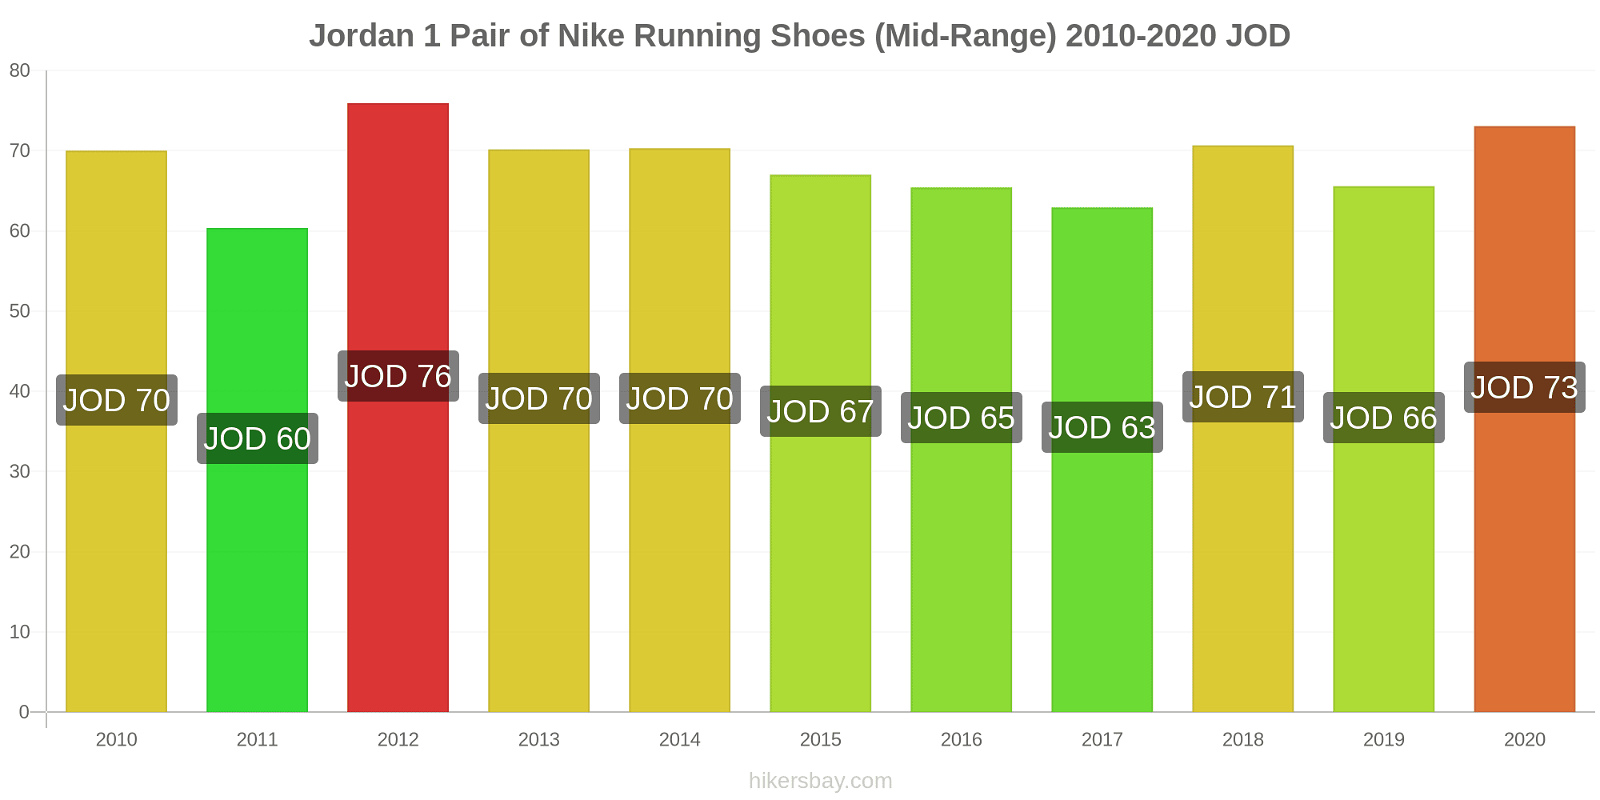 Jordan price changes 1 Pair of Nike Running Shoes (Mid-Range) hikersbay.com